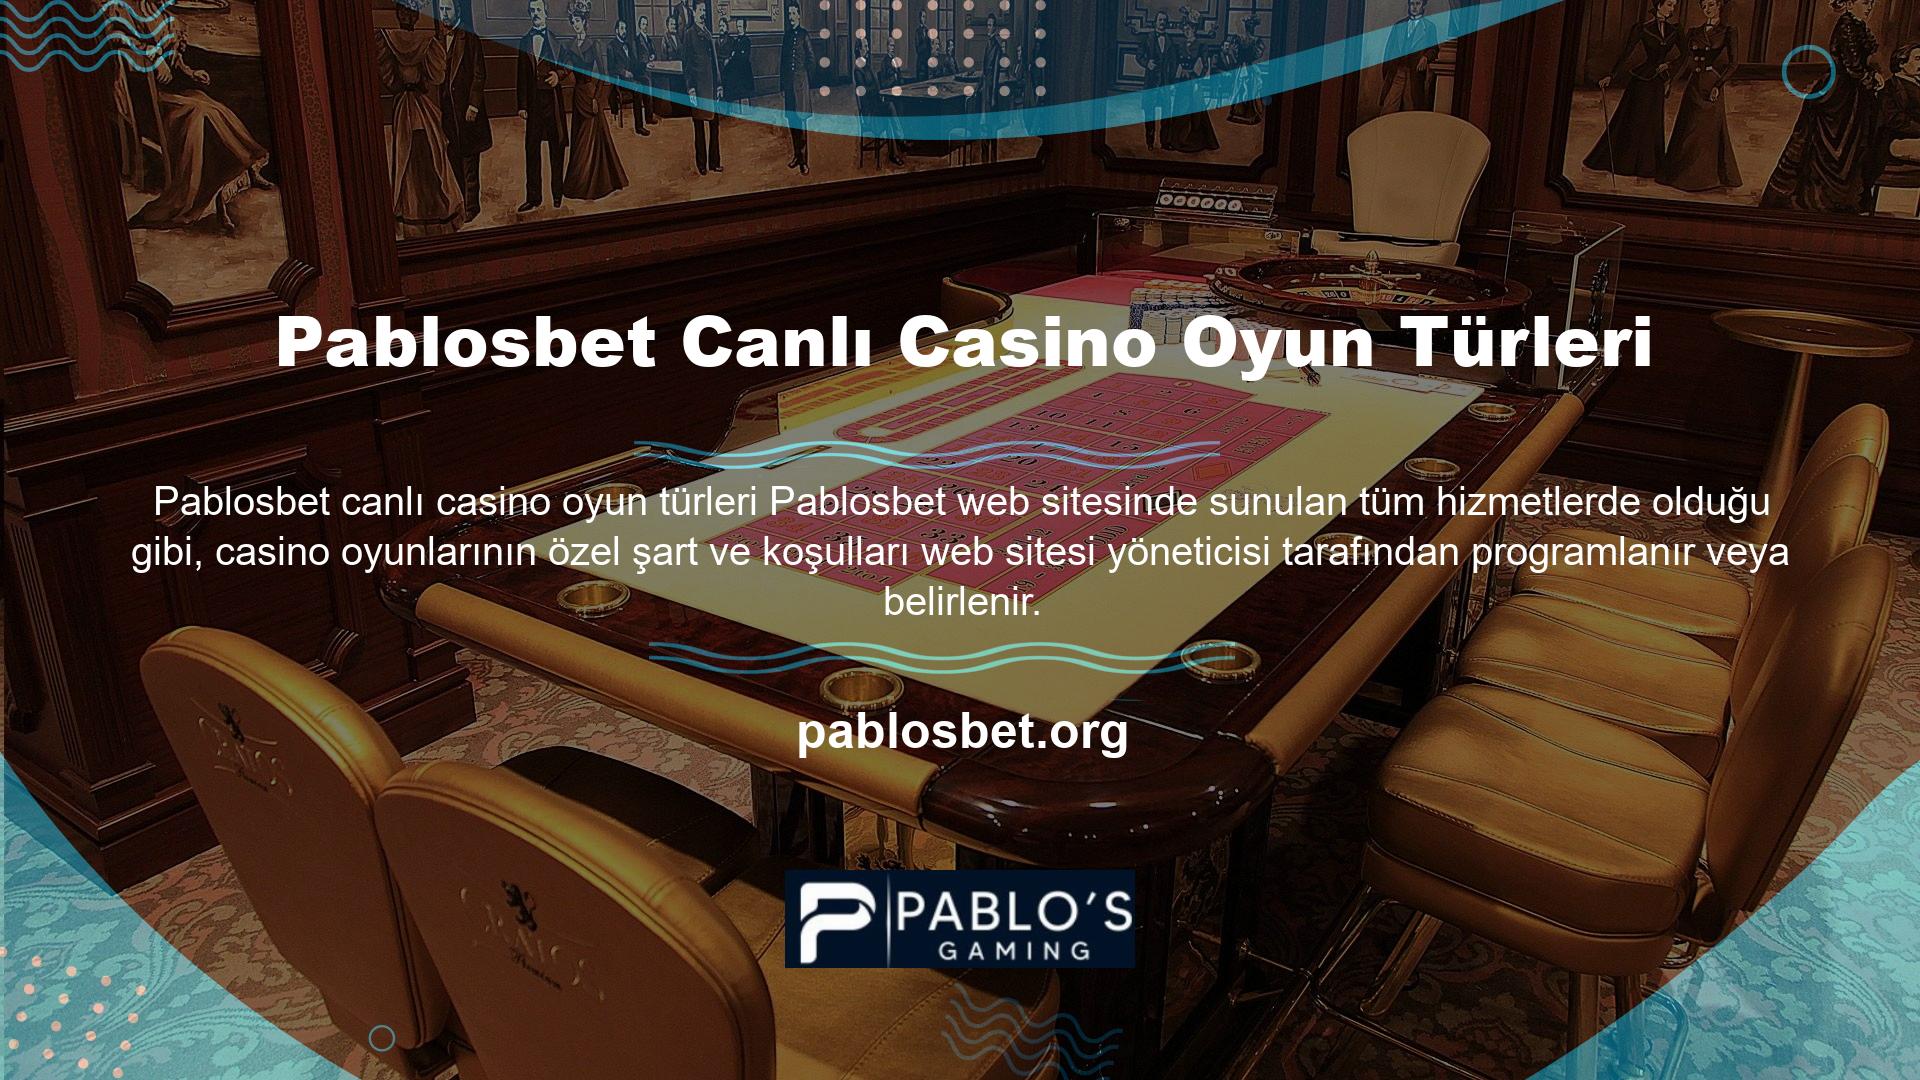 Bu şartların yerine getirilmemesi durumunda Site Yöneticileri, Pablosbet canlı casino oyun türlerinin yasa dışı gelir elde ettiğini tespit etmeleri halinde Üye'nin hesabını dondurabilir, Üye'nin hesabını sonlandırabilir ve gelirlerini azaltabilir